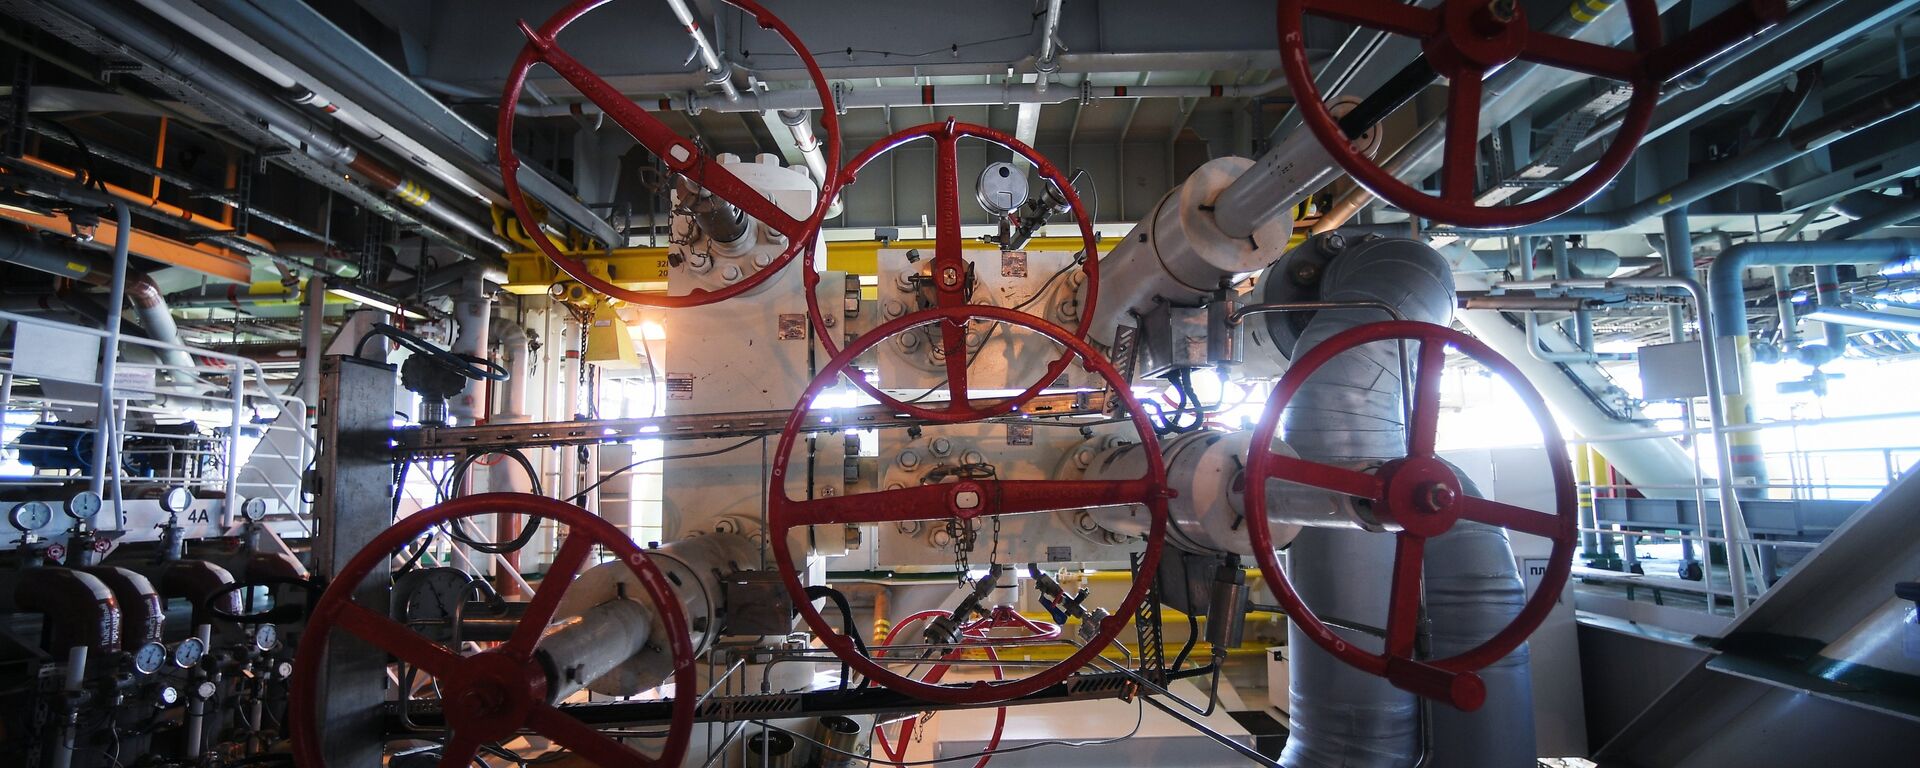 La maquinaria de una plataforma rusa instalada en un yacimiento de petróleo y gas - Sputnik Mundo, 1920, 13.09.2021